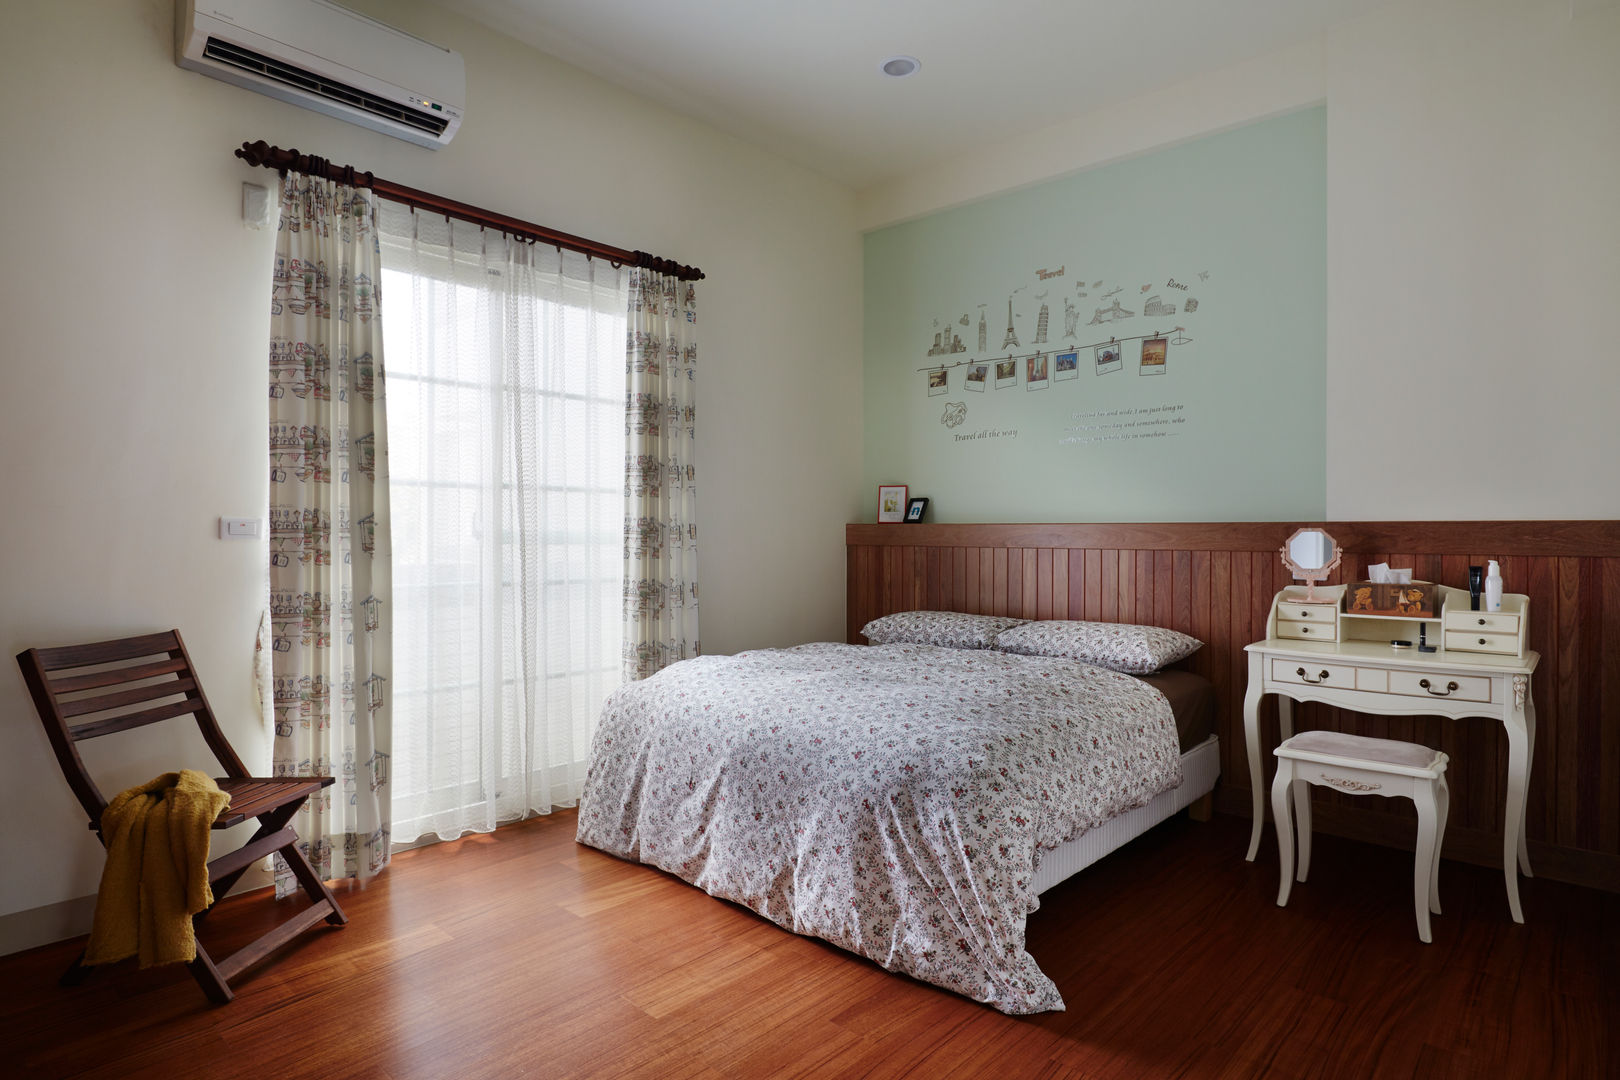 簡單的床板與床頭的顏色營造輕鬆的休憩氛圍，溫暖、簡單而又輕鬆寫意 homify 臥室 水泥